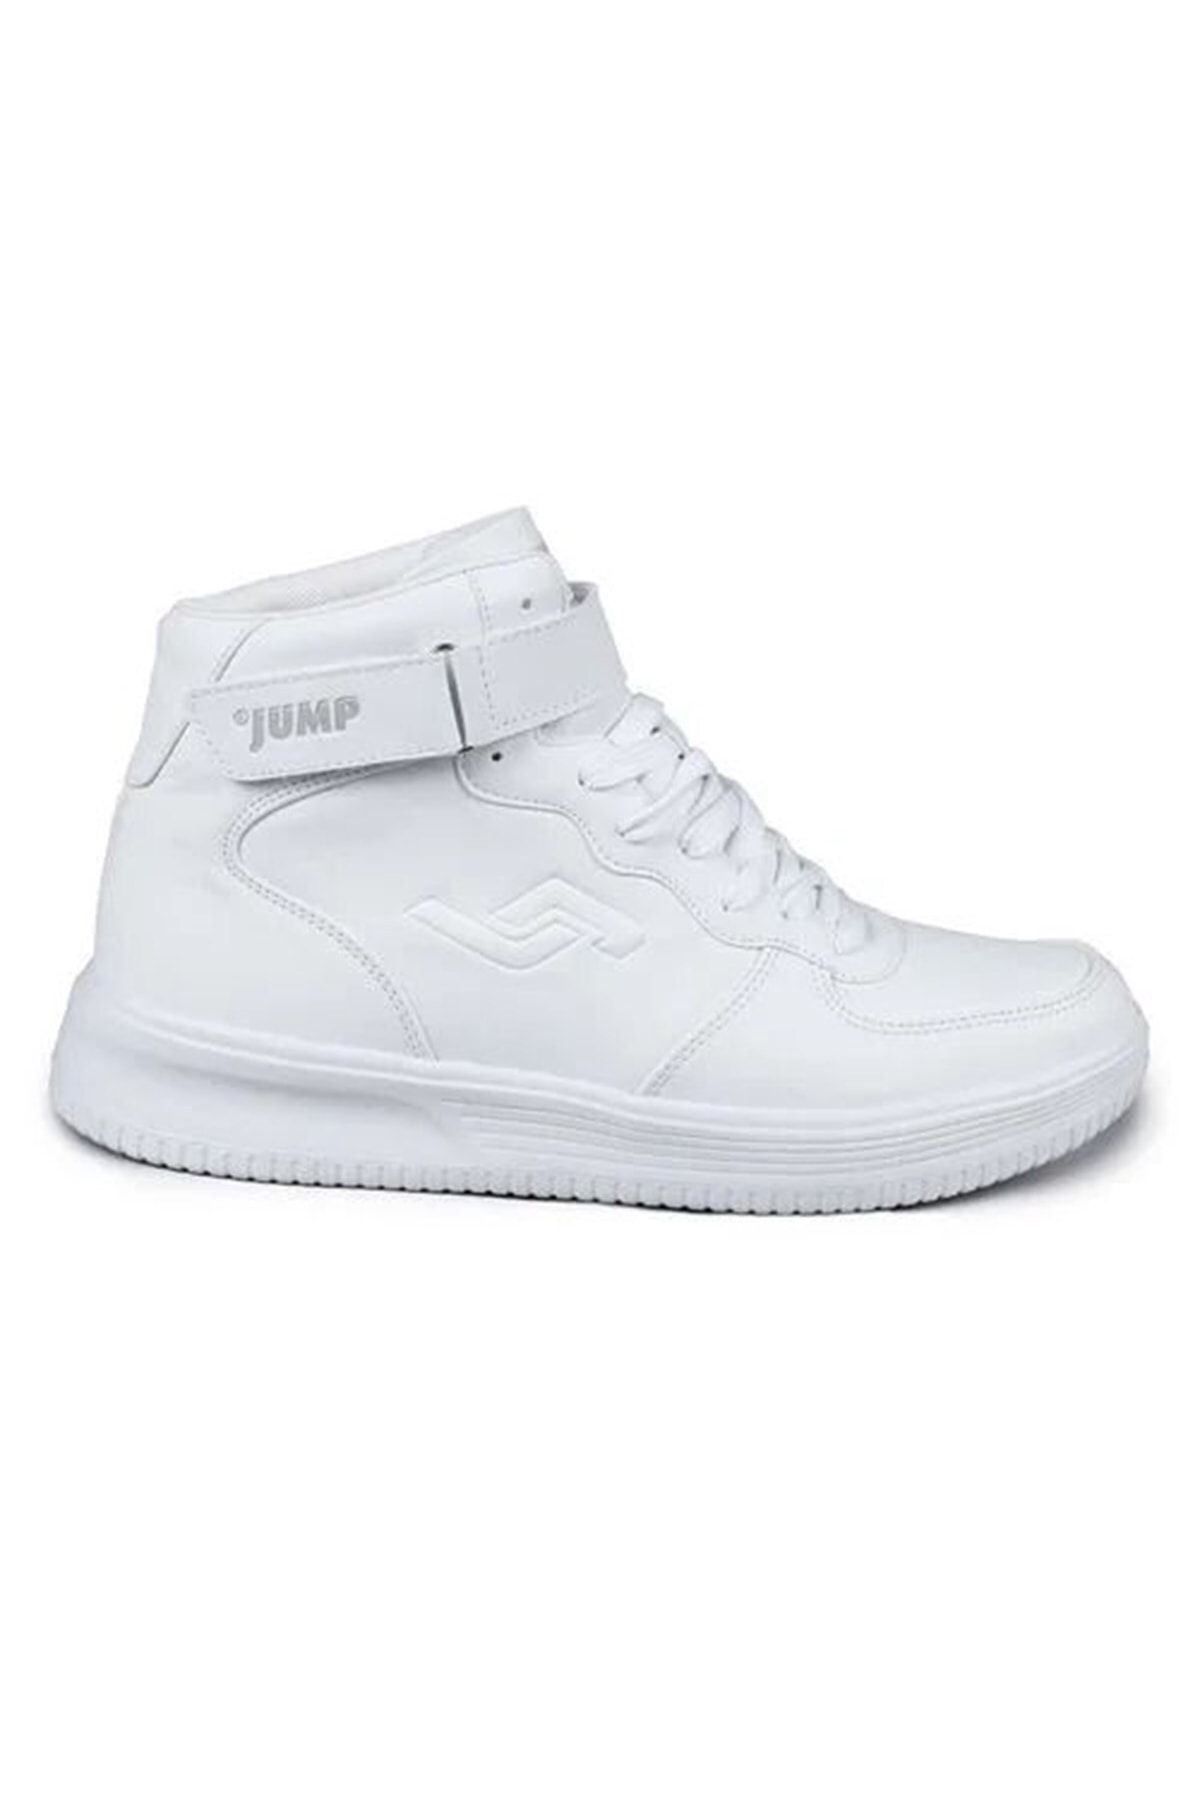 Jump 16309 Beyaz Renk Erkek Sneaker Spor Ayakkabı